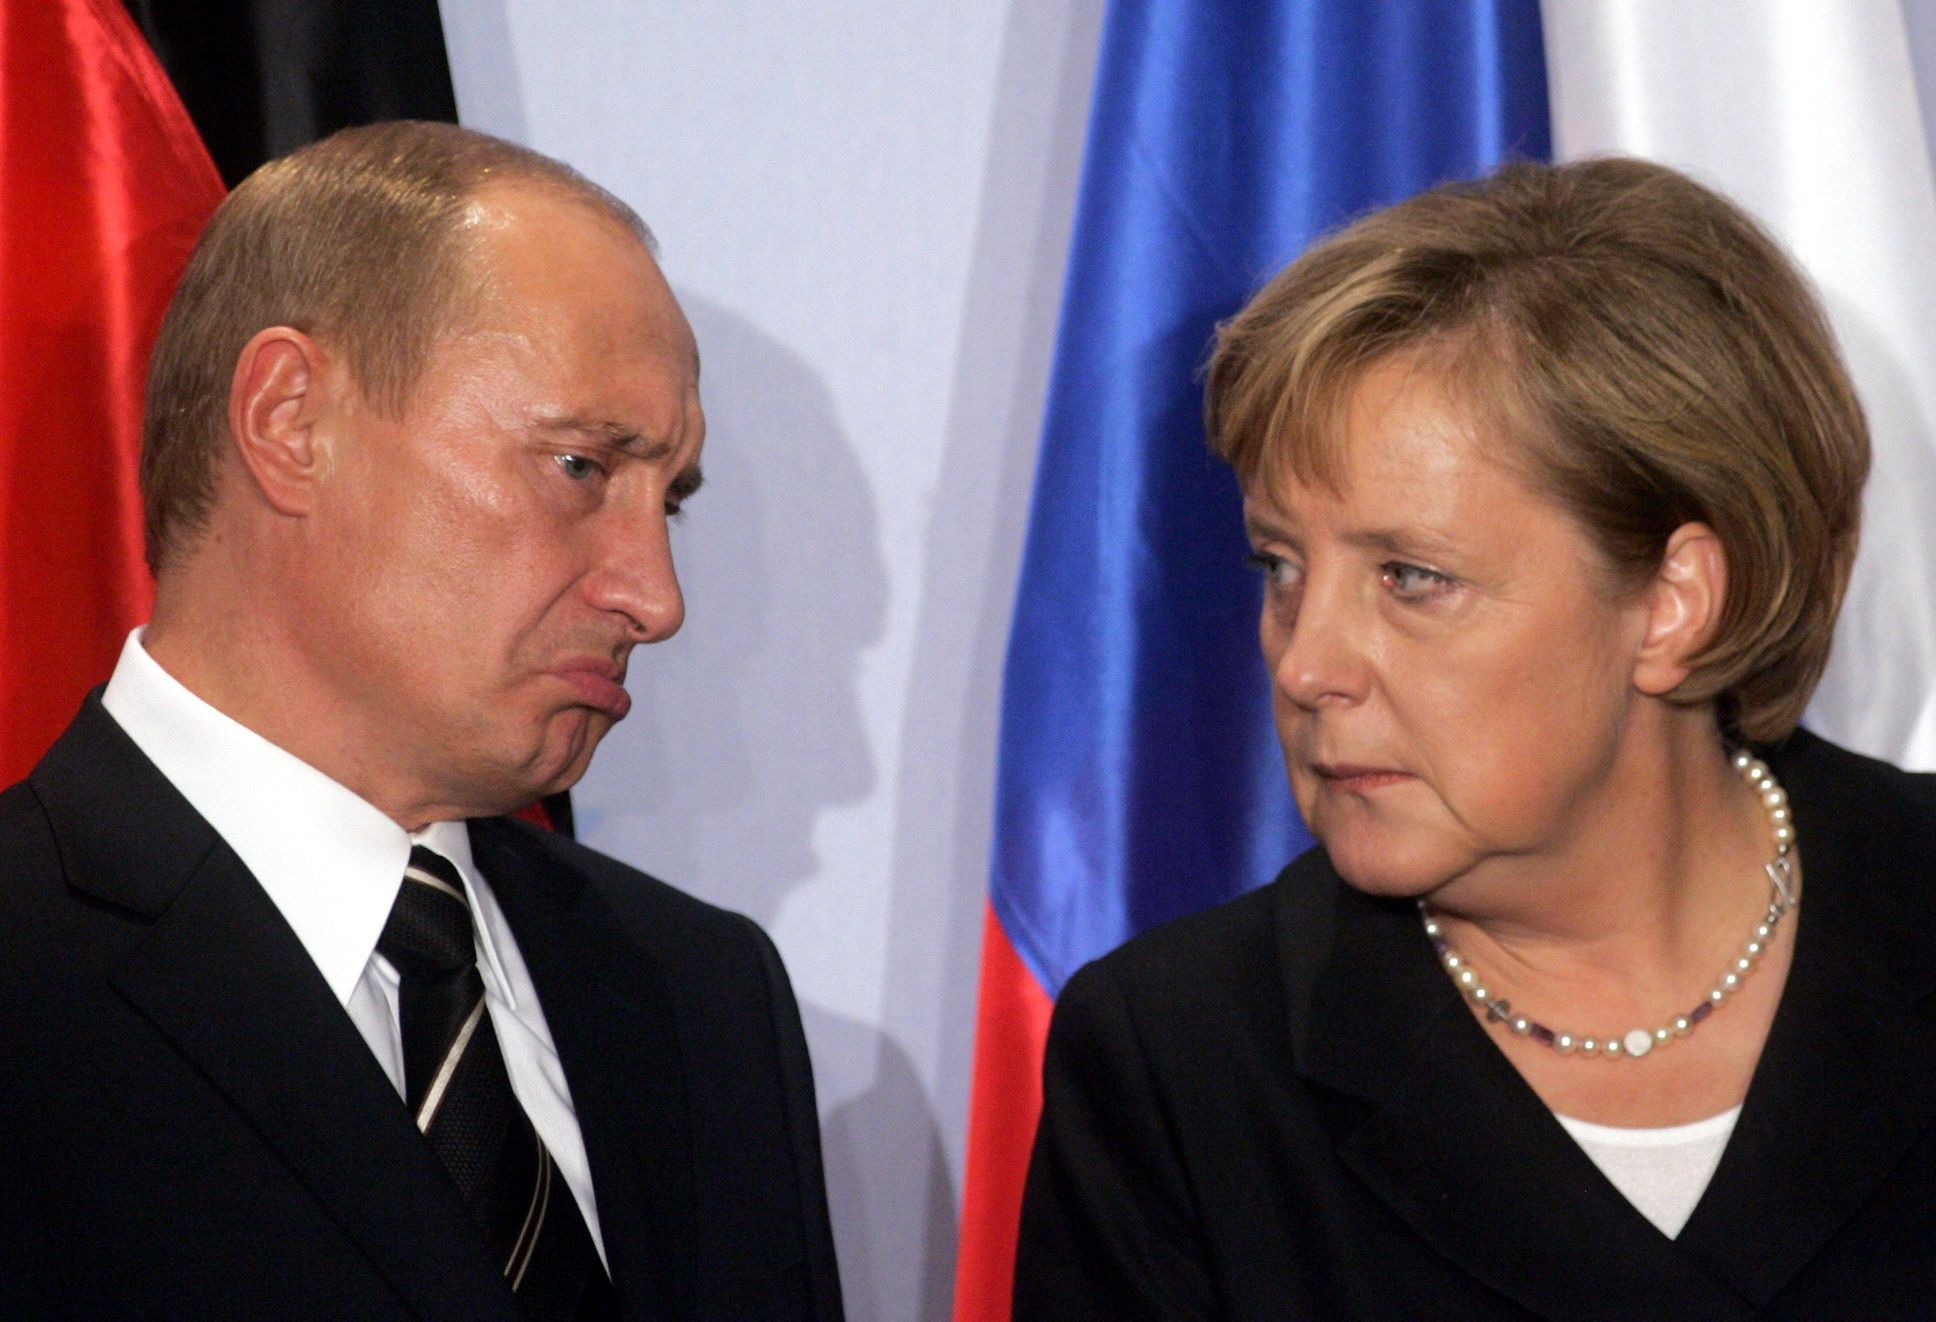 Angela Merkelová a Vladimir Putin